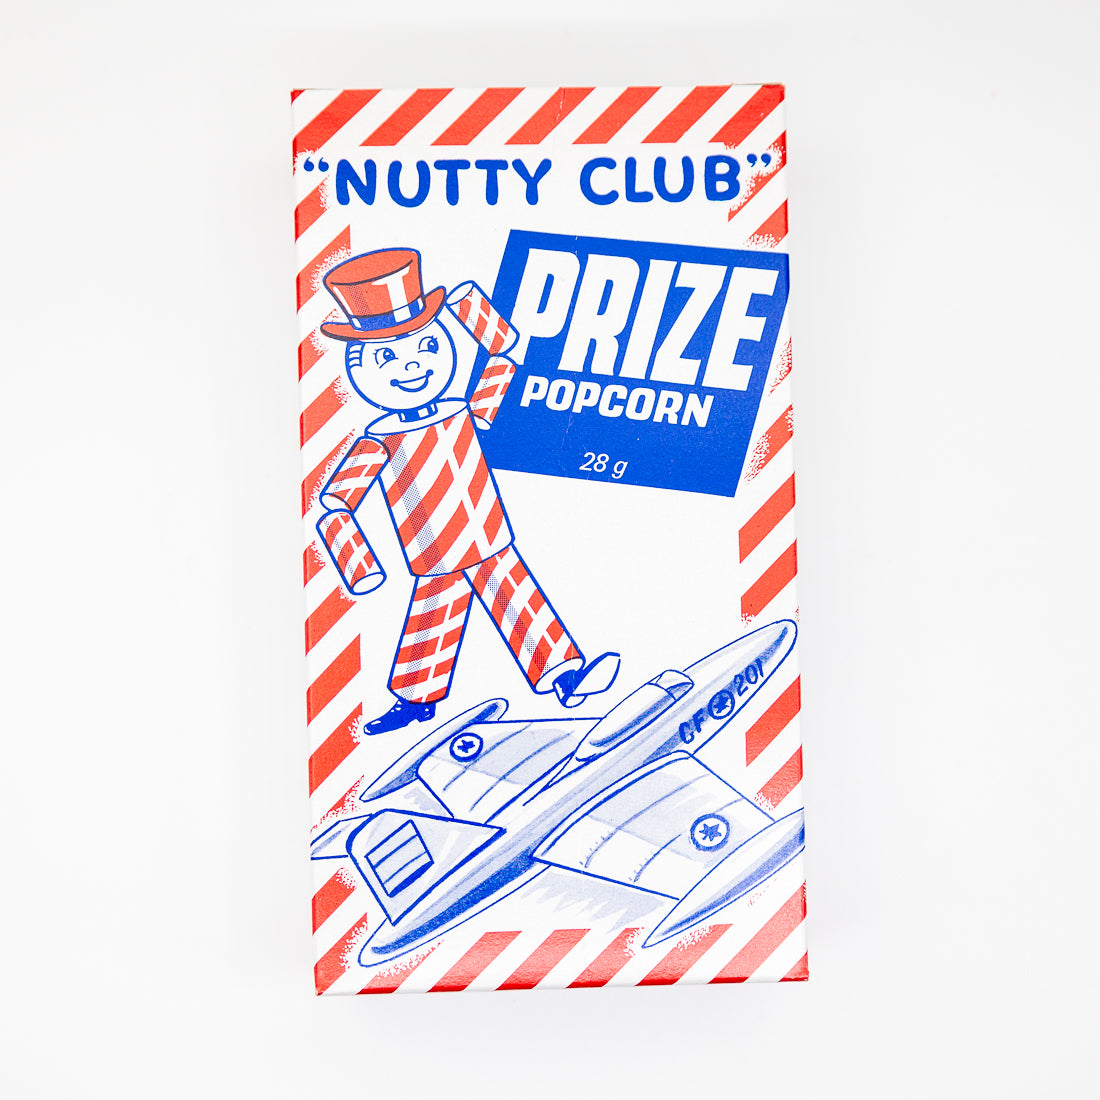 Nutty Club Pink Prize Popcorn